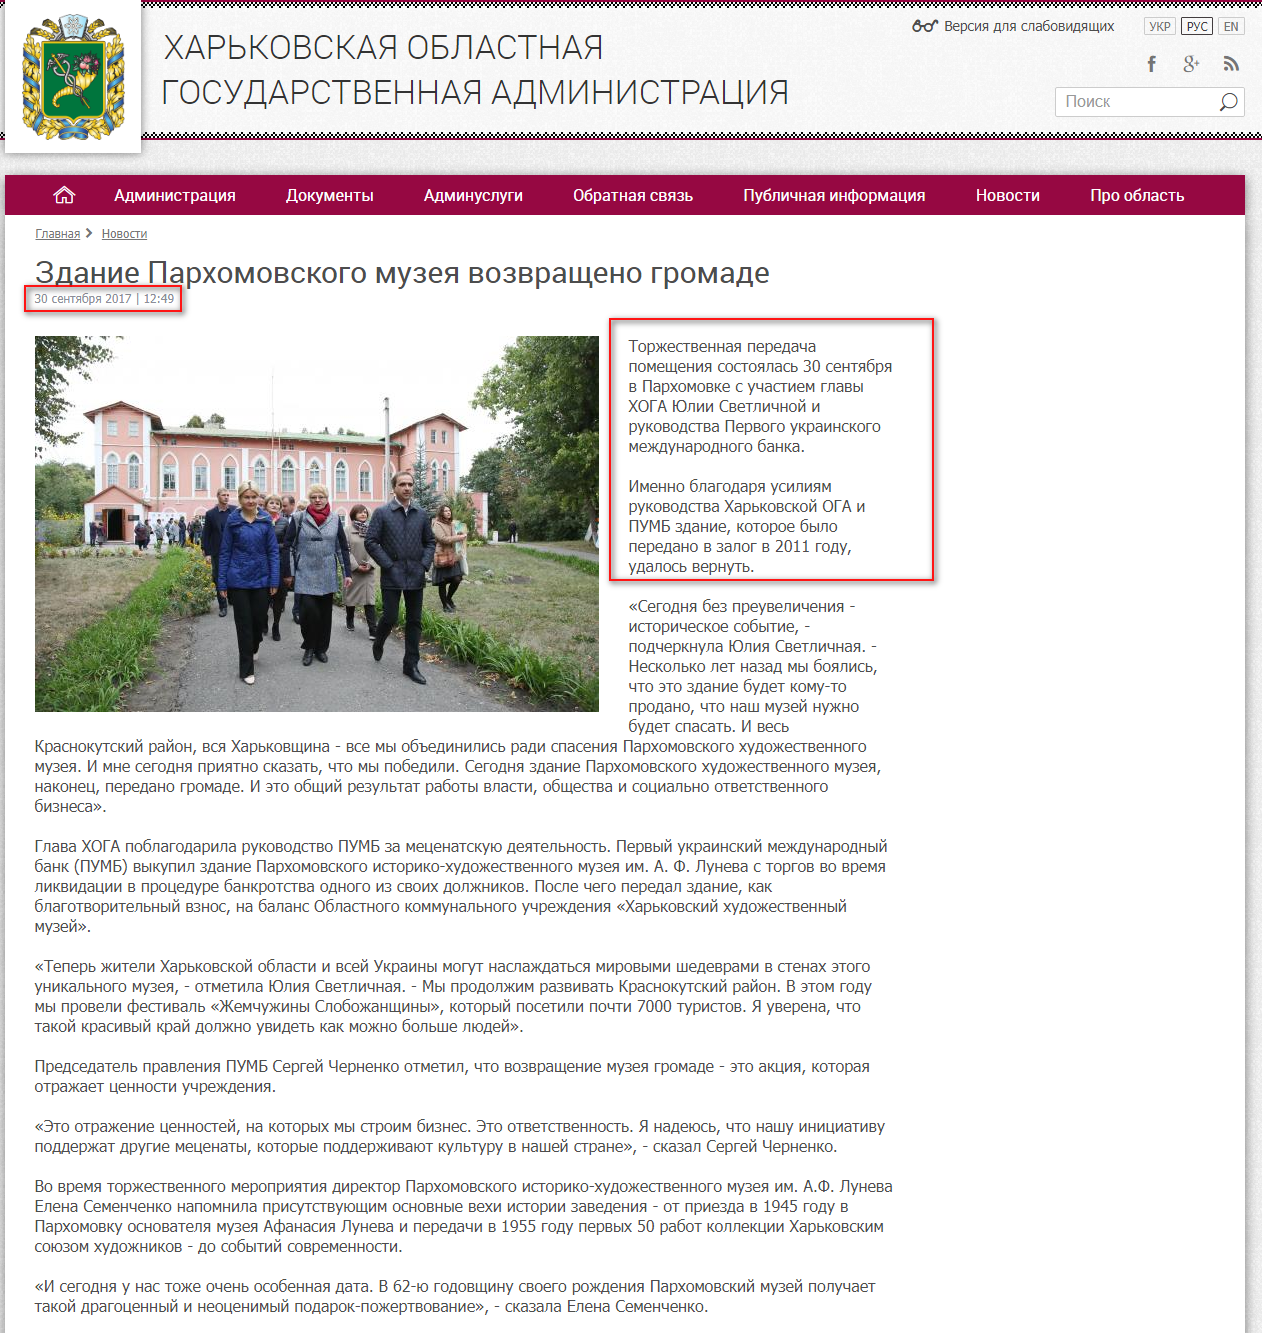 http://kharkivoda.gov.ua/ru/news/88817